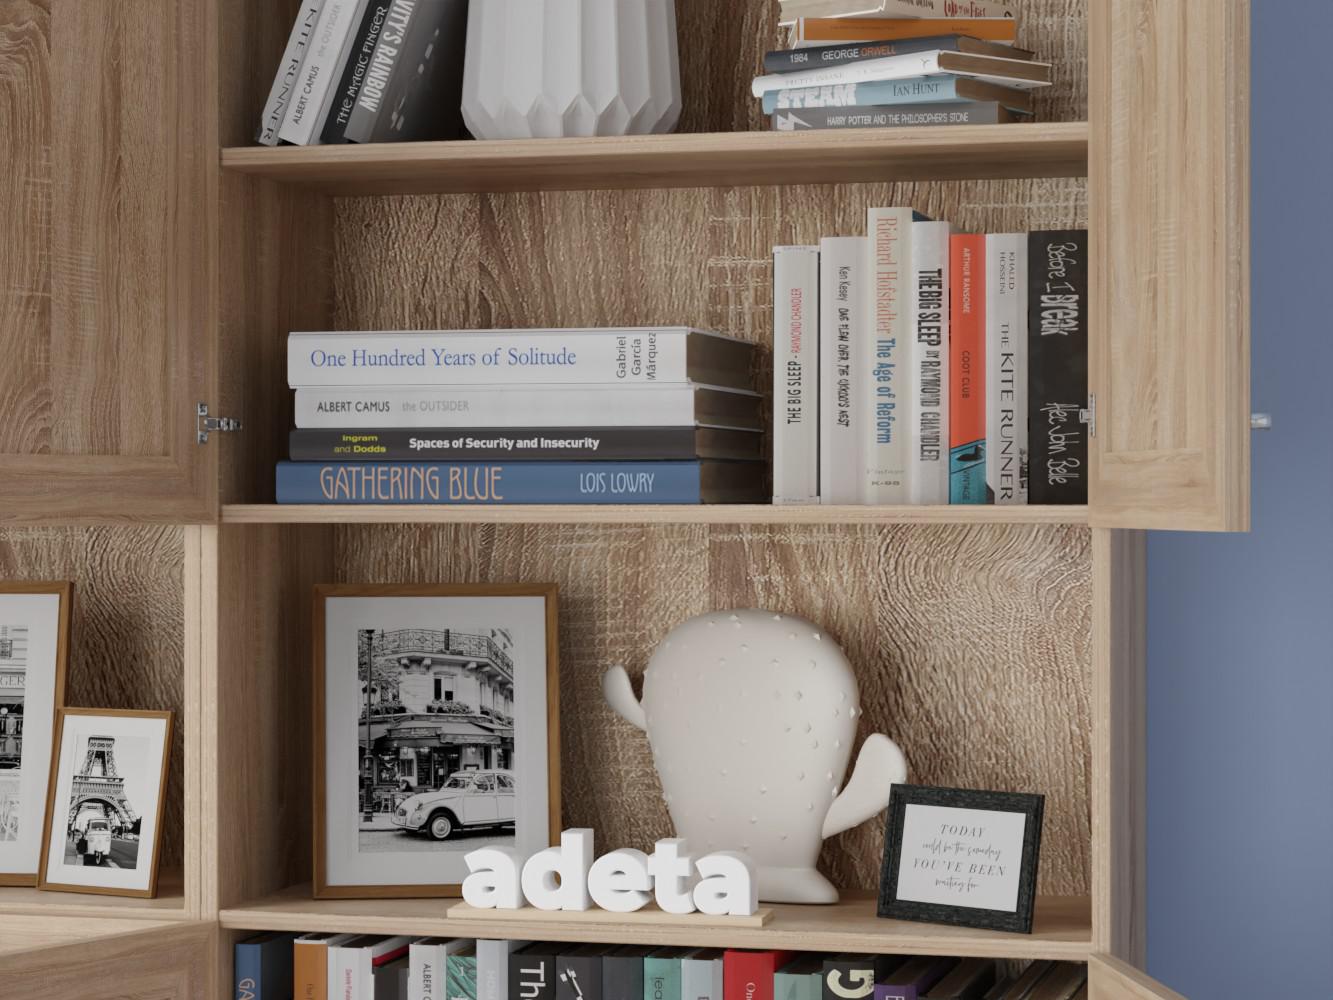 Книжный шкаф Билли 351 beige ИКЕА (IKEA) изображение товара